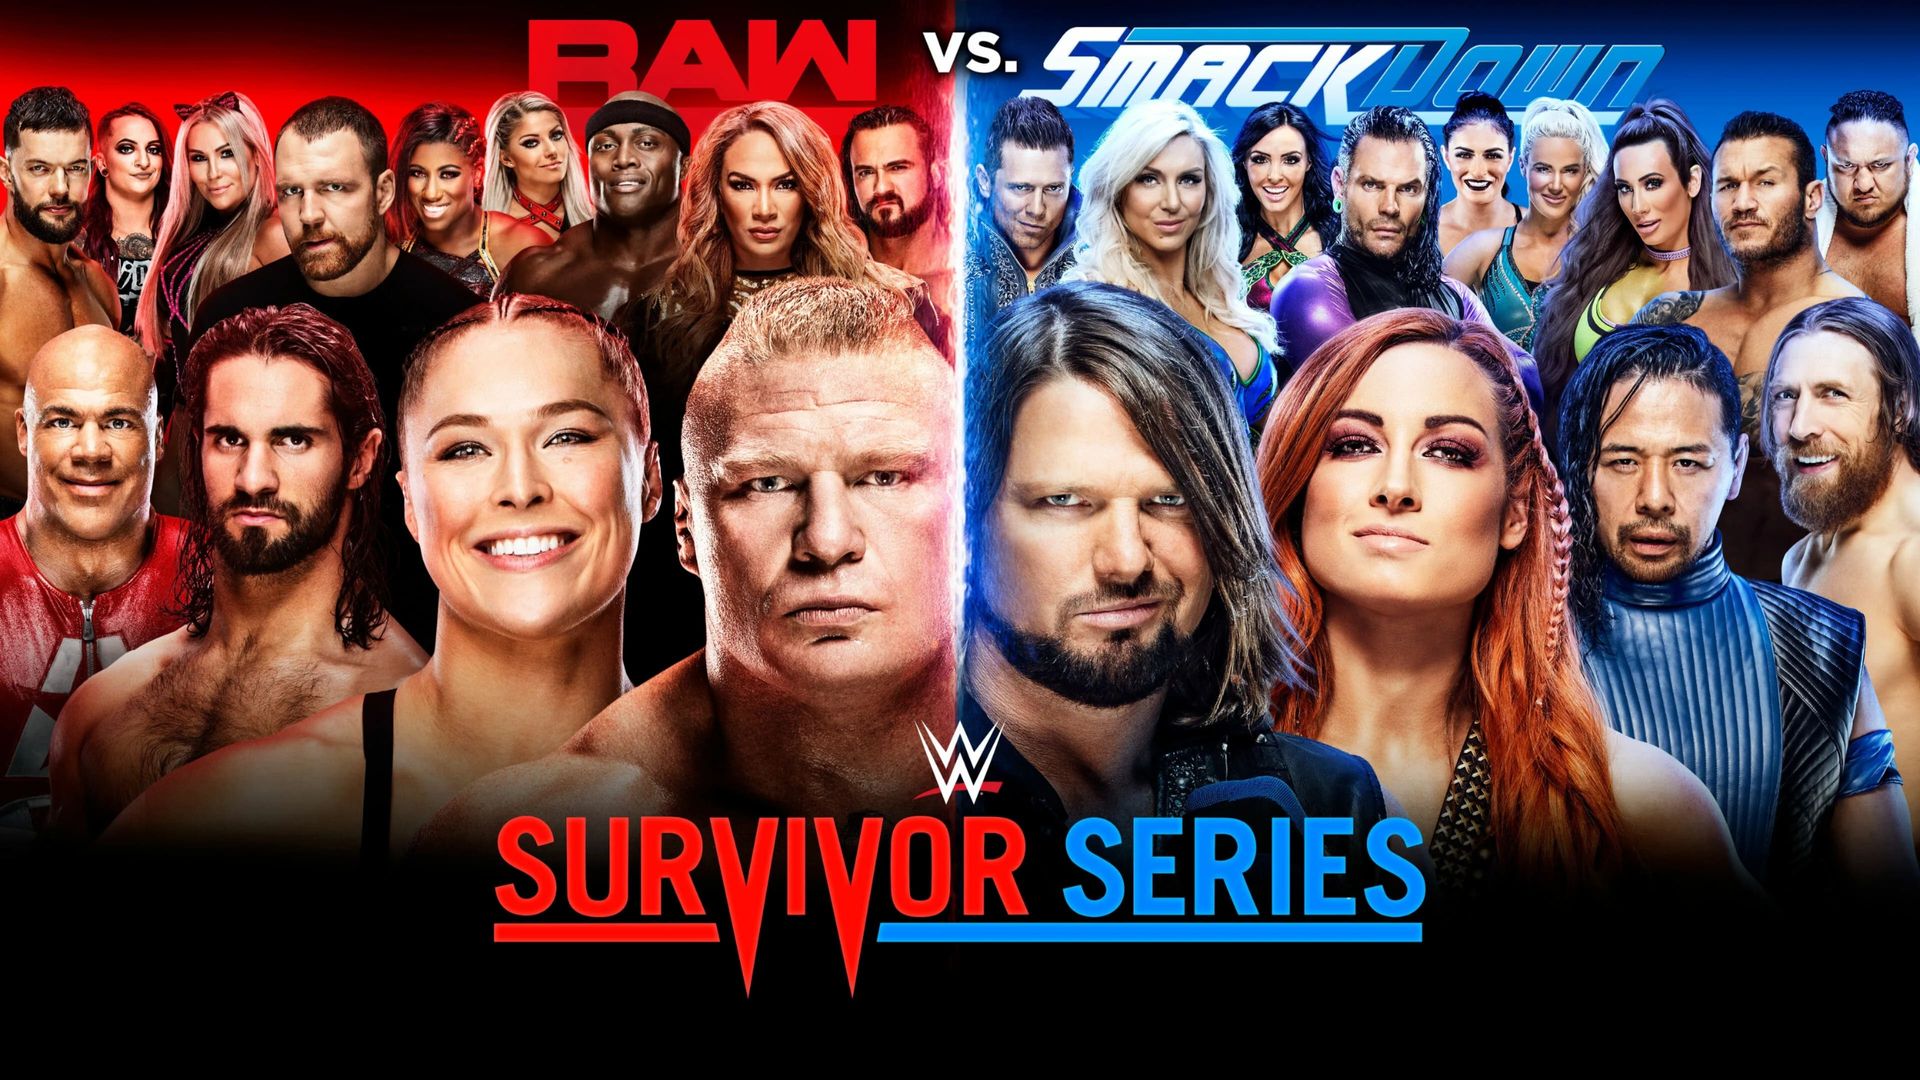 WWE Survivor Series background